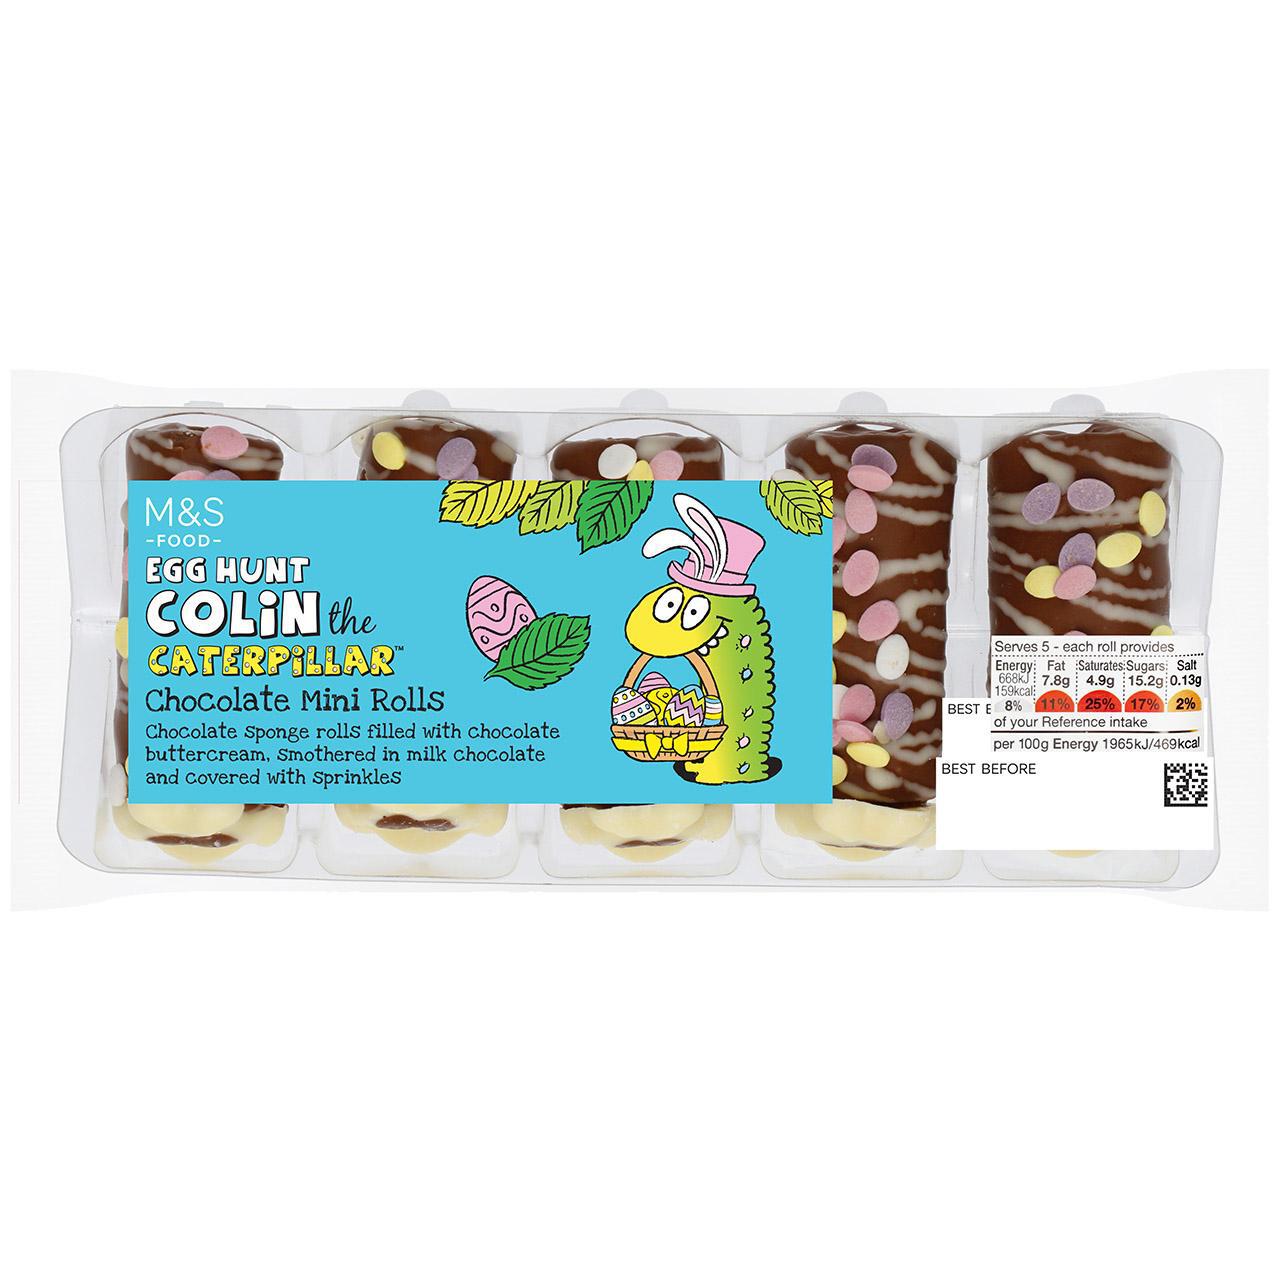 M&S Egghunt Mini Colin the Caterpillar Cakes 165g